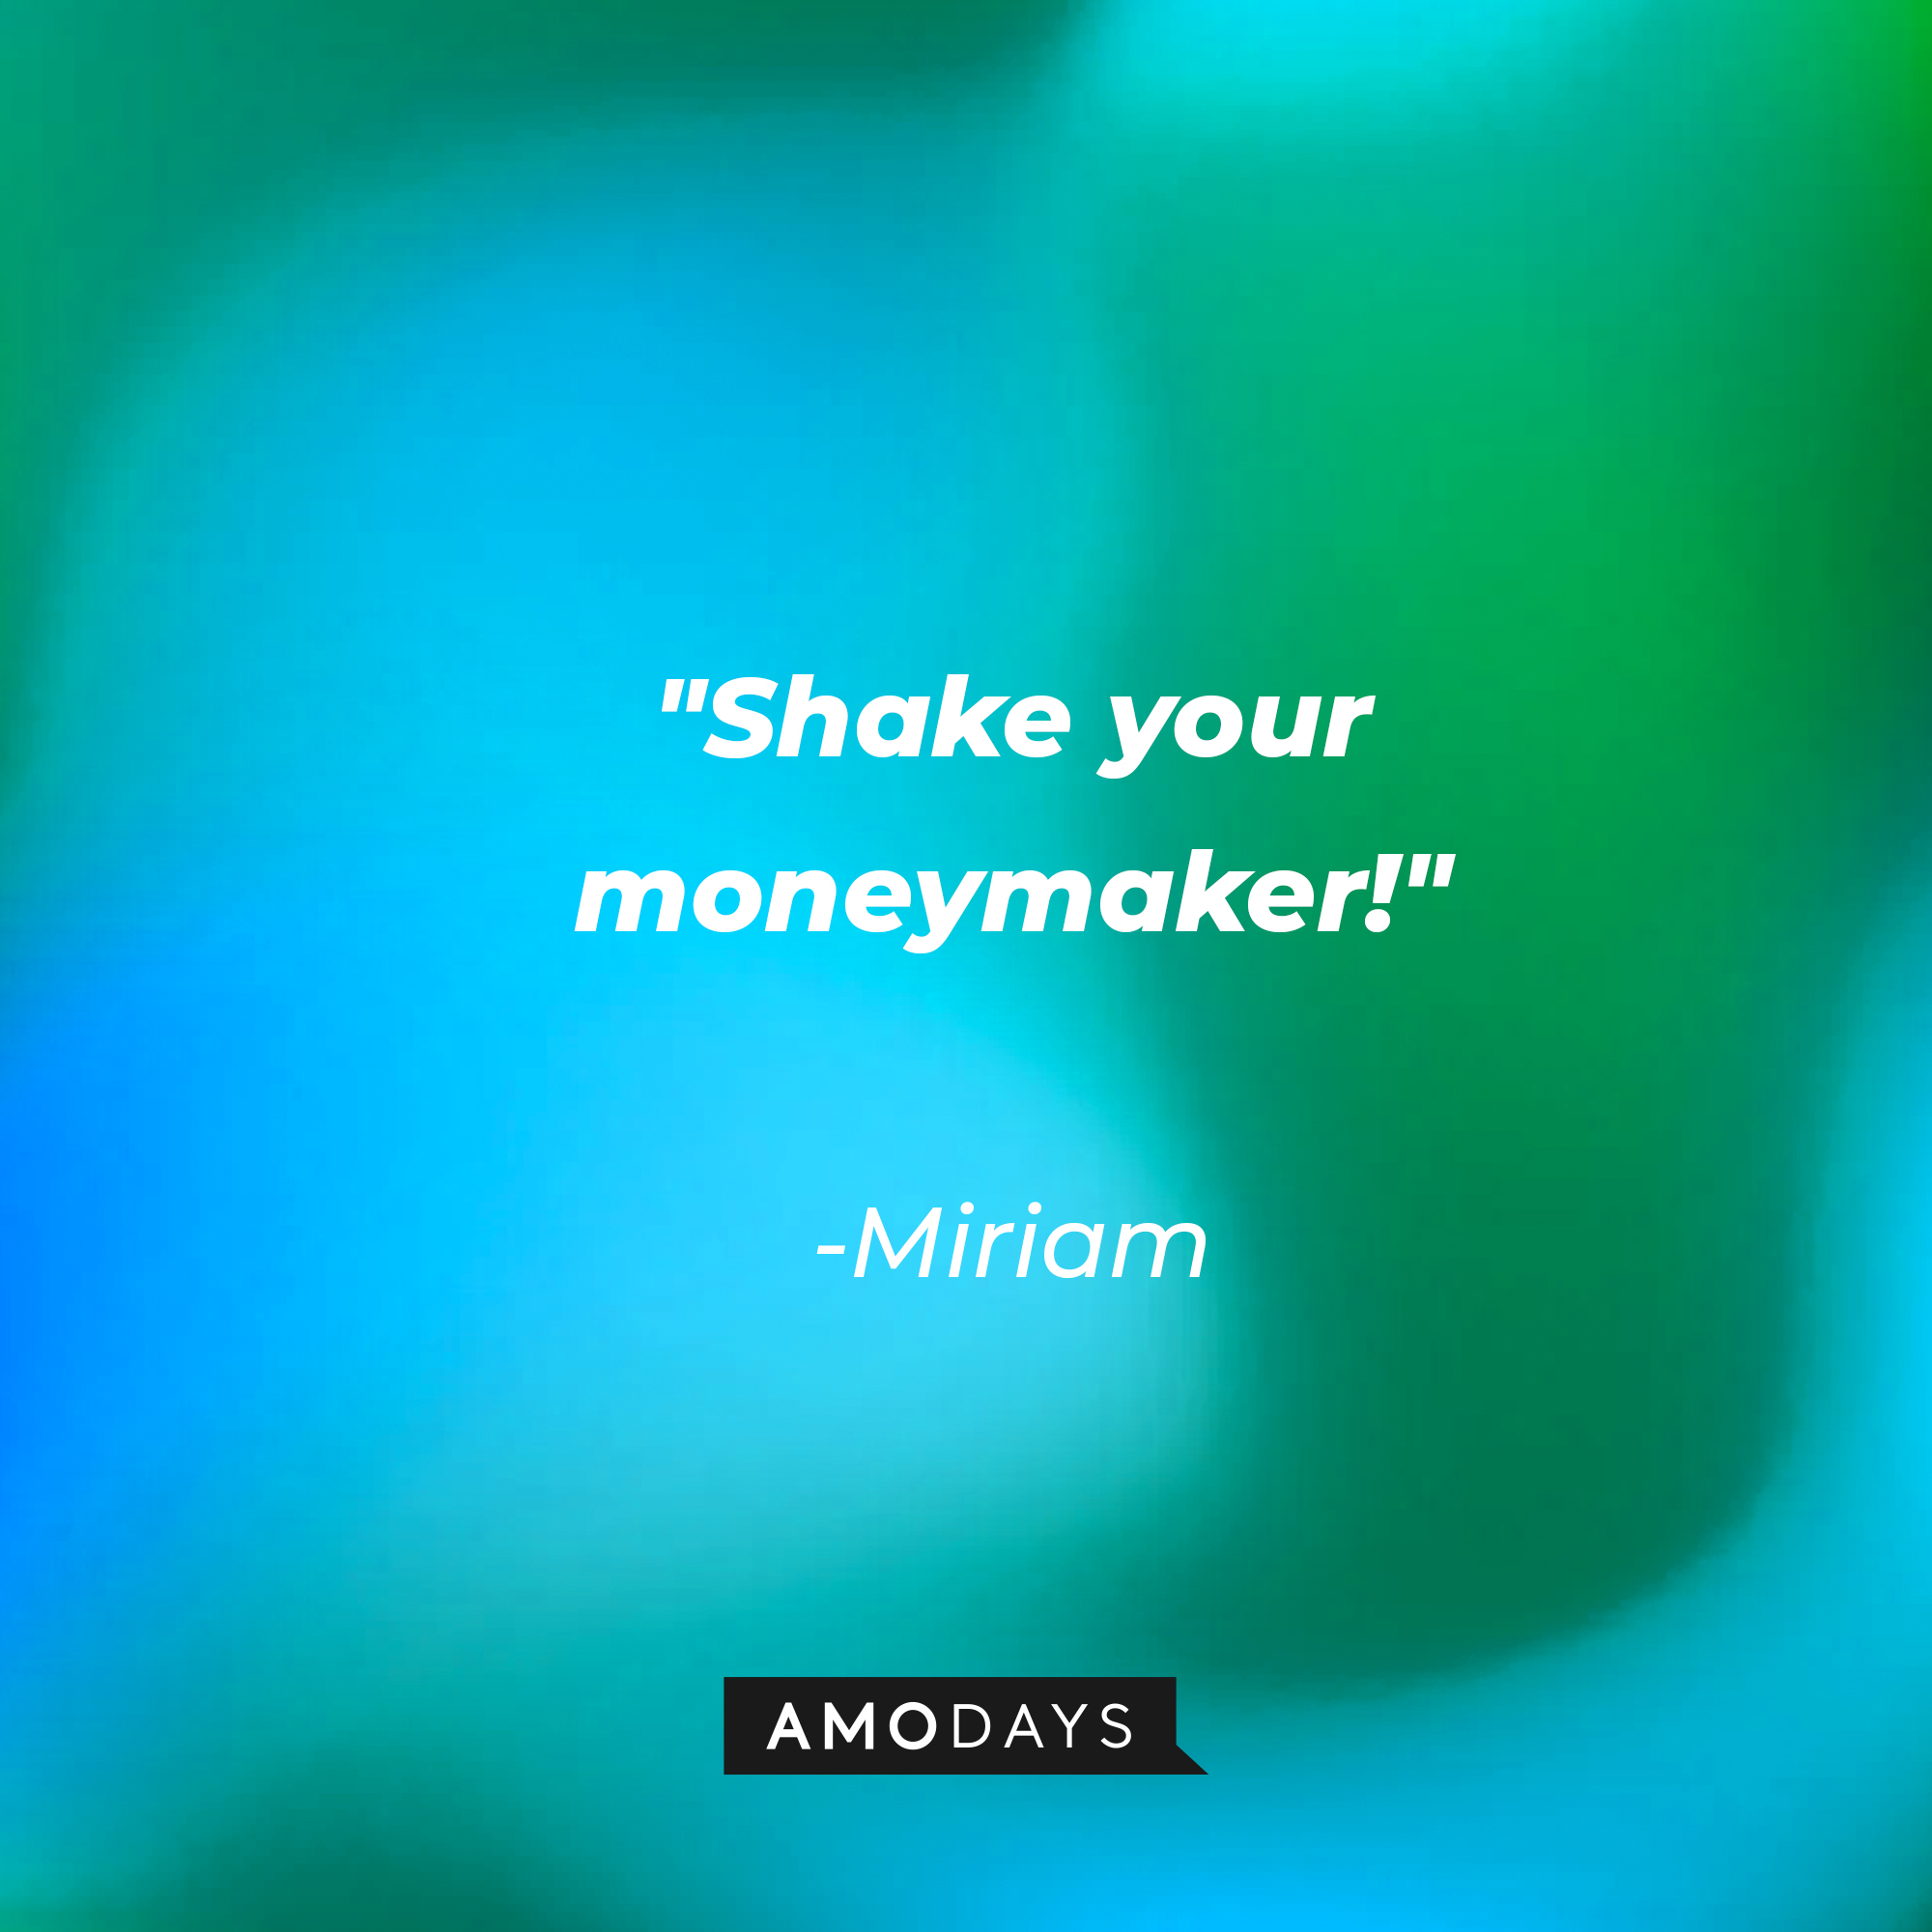 Miriam's quote: "Shake your moneymaker!" | Source: AmoDays